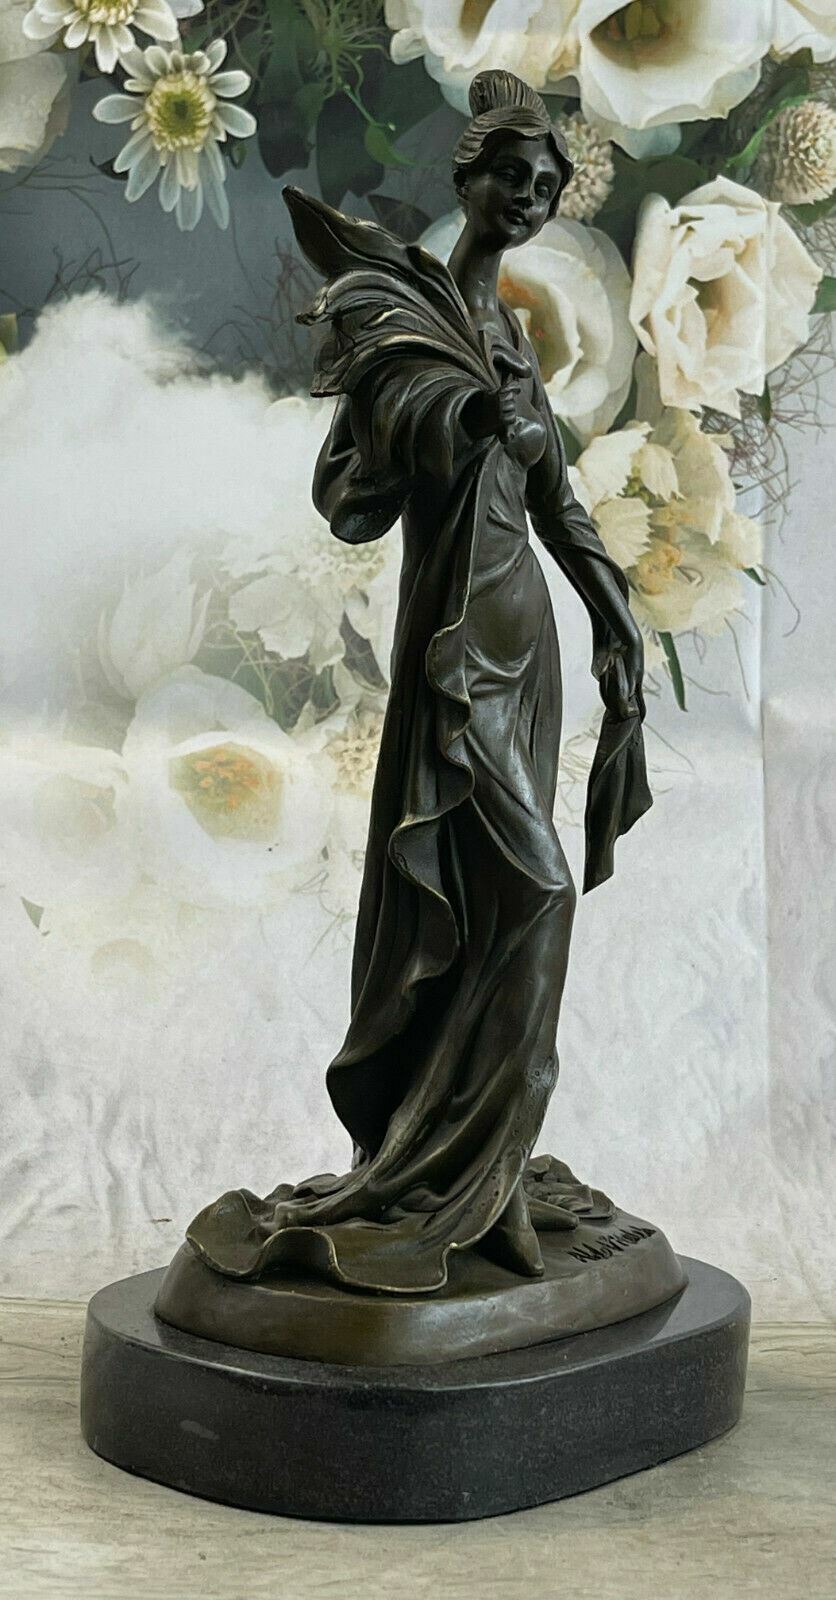 Art Nouveau Victorian Woman French Art Statue Figurine Bronze hot Cast Vitale NR